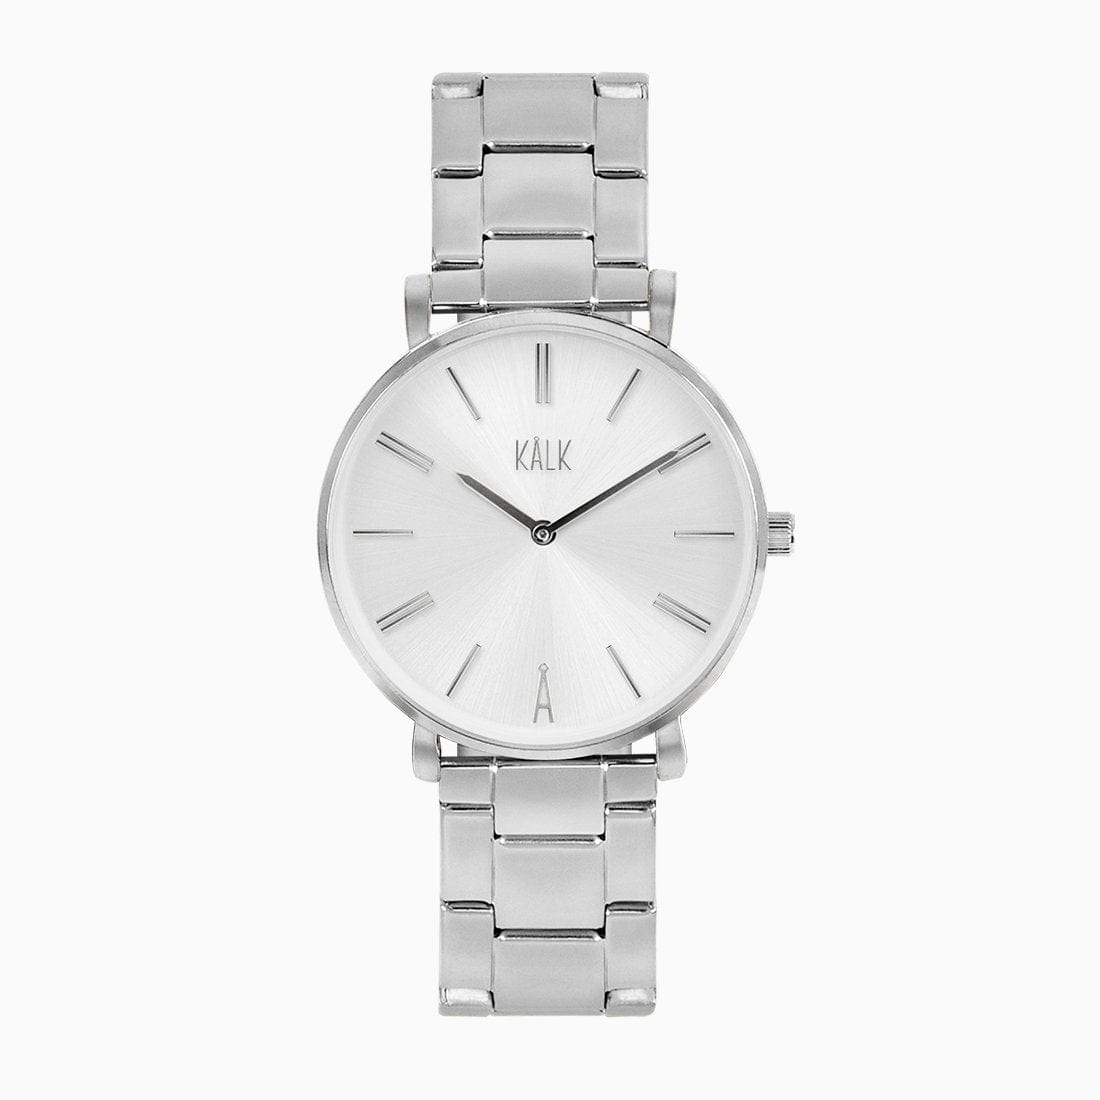 Stilvolle Silber / Weiß Uhr